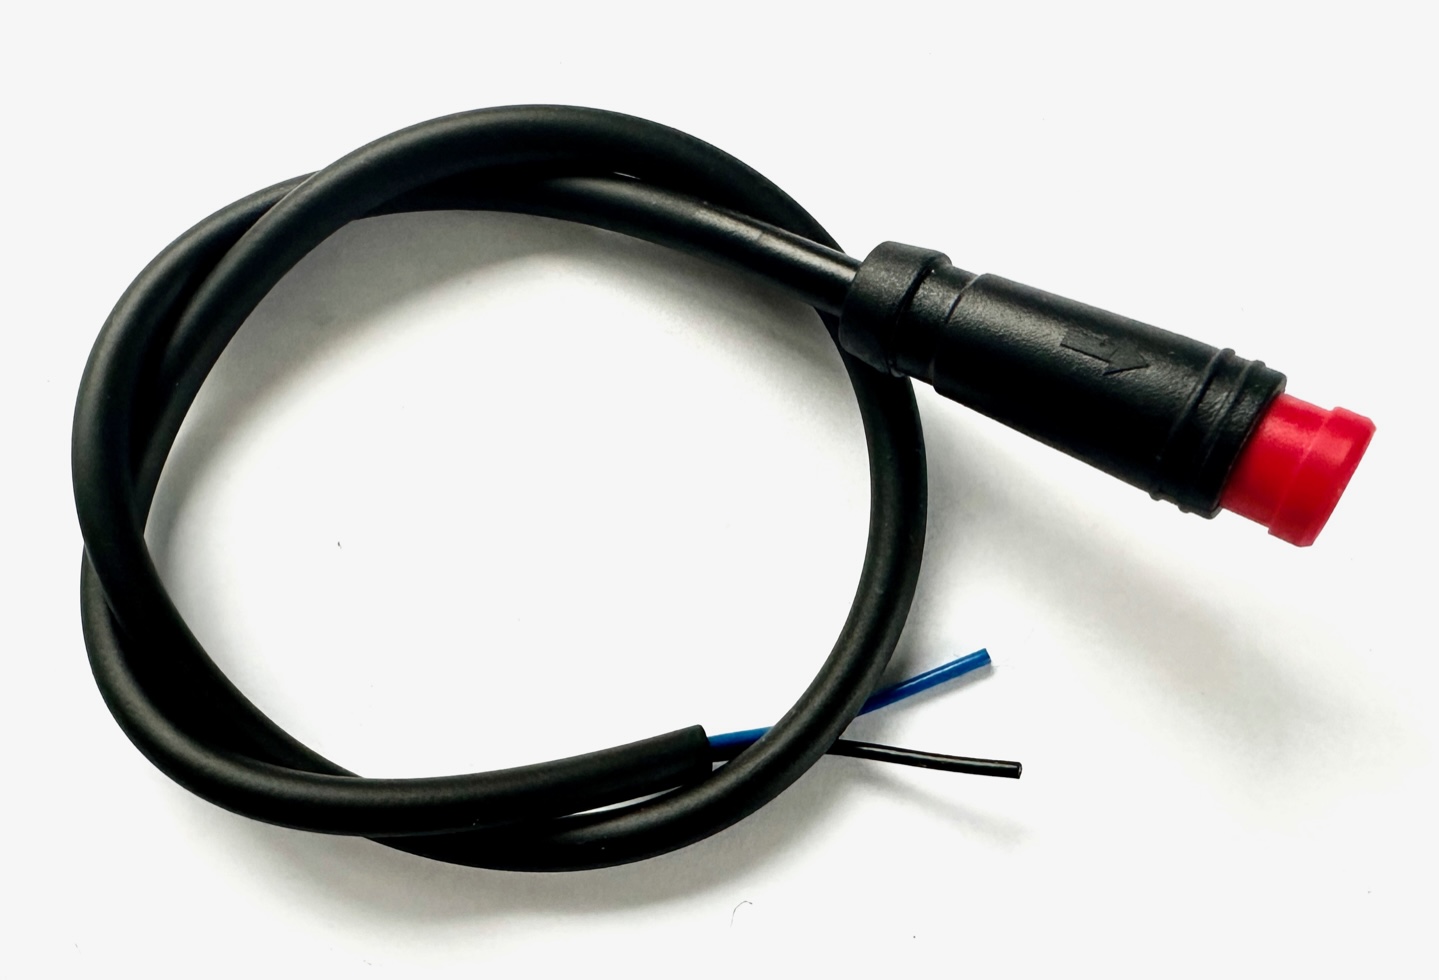 HIGO / Julet Câble d'extension 30 cm pour Ebike, 2 PIN mâle